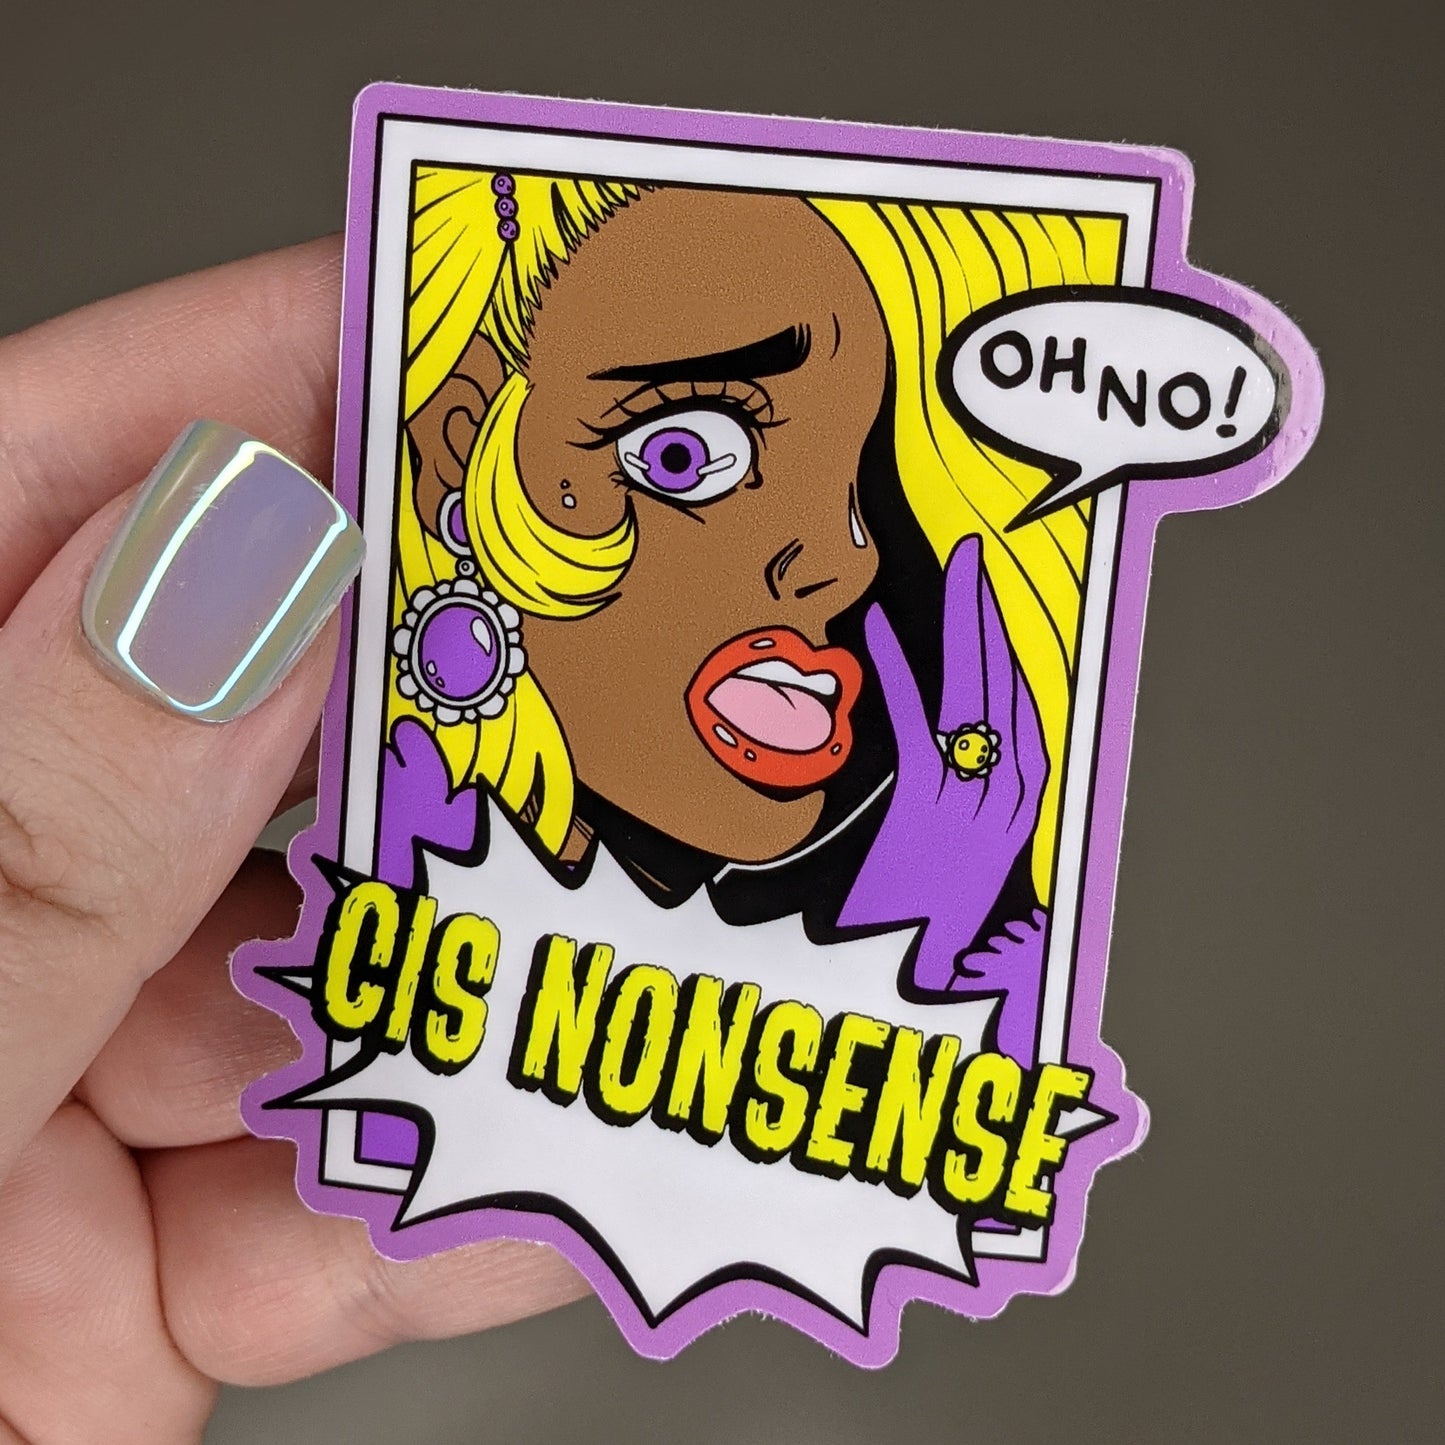 Cis Nonsense ENBY Pride Sticker